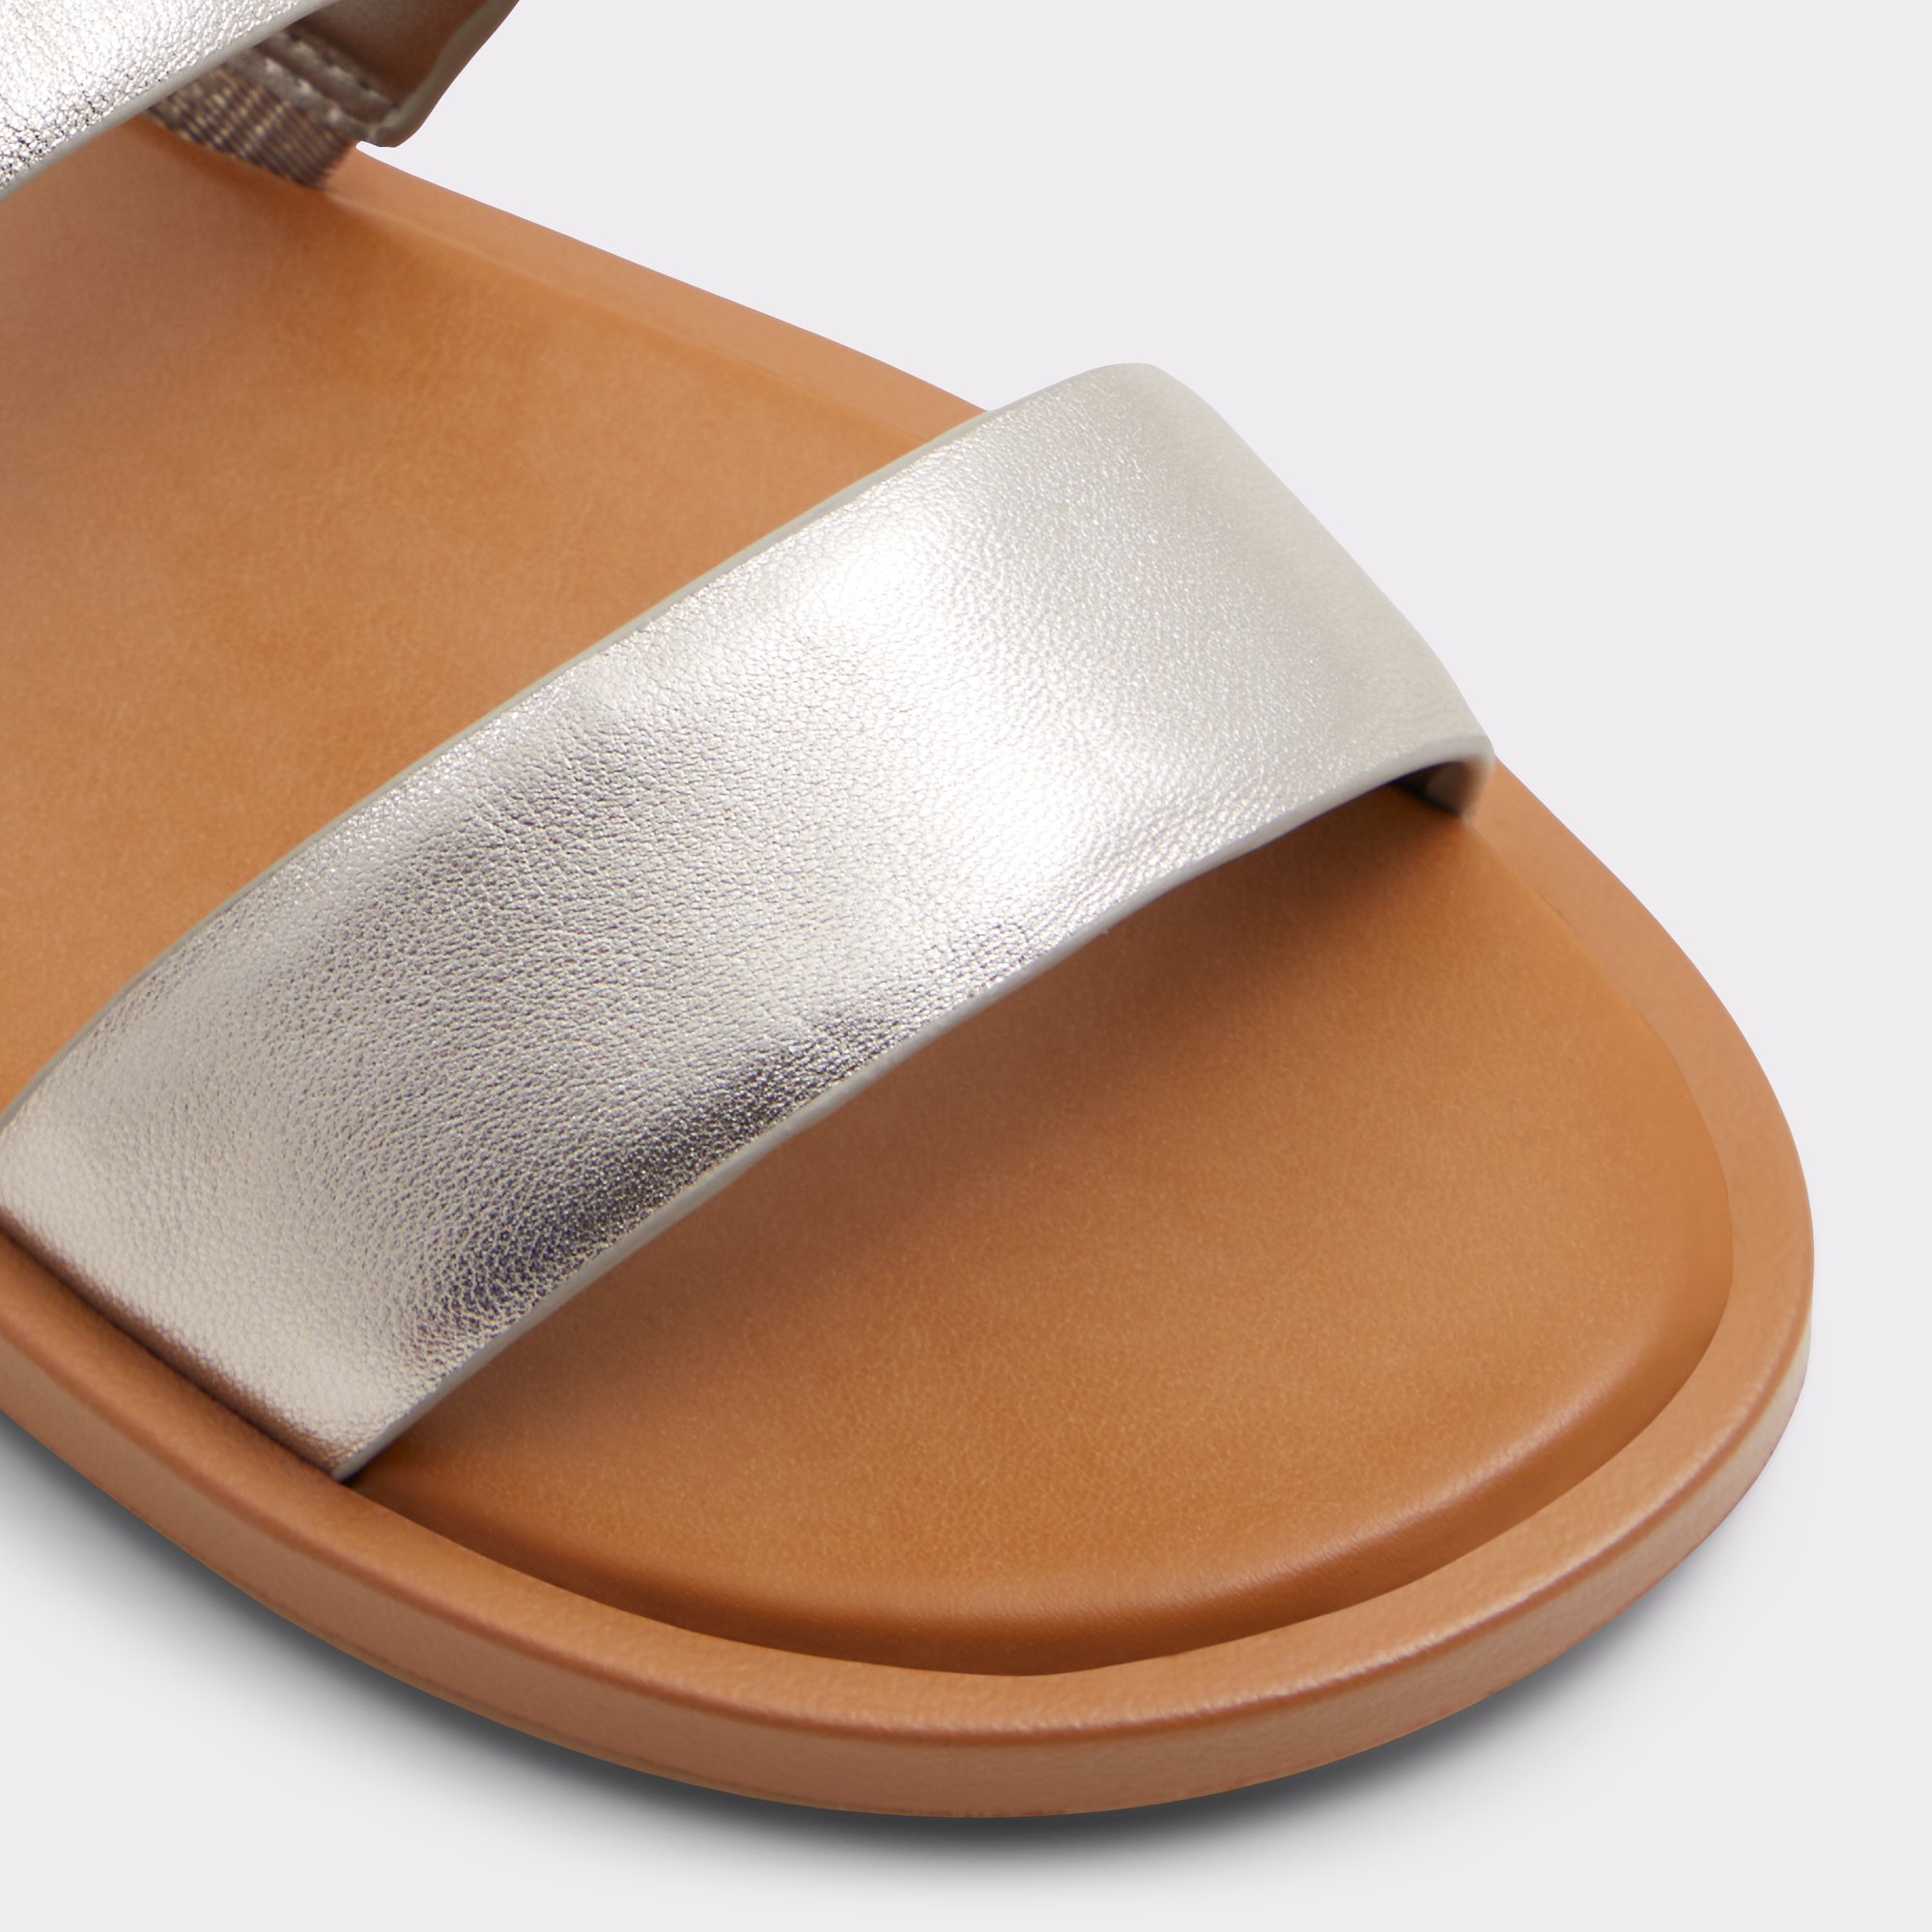 Krios Silver Women's Flat Sandals | ALDO Canada